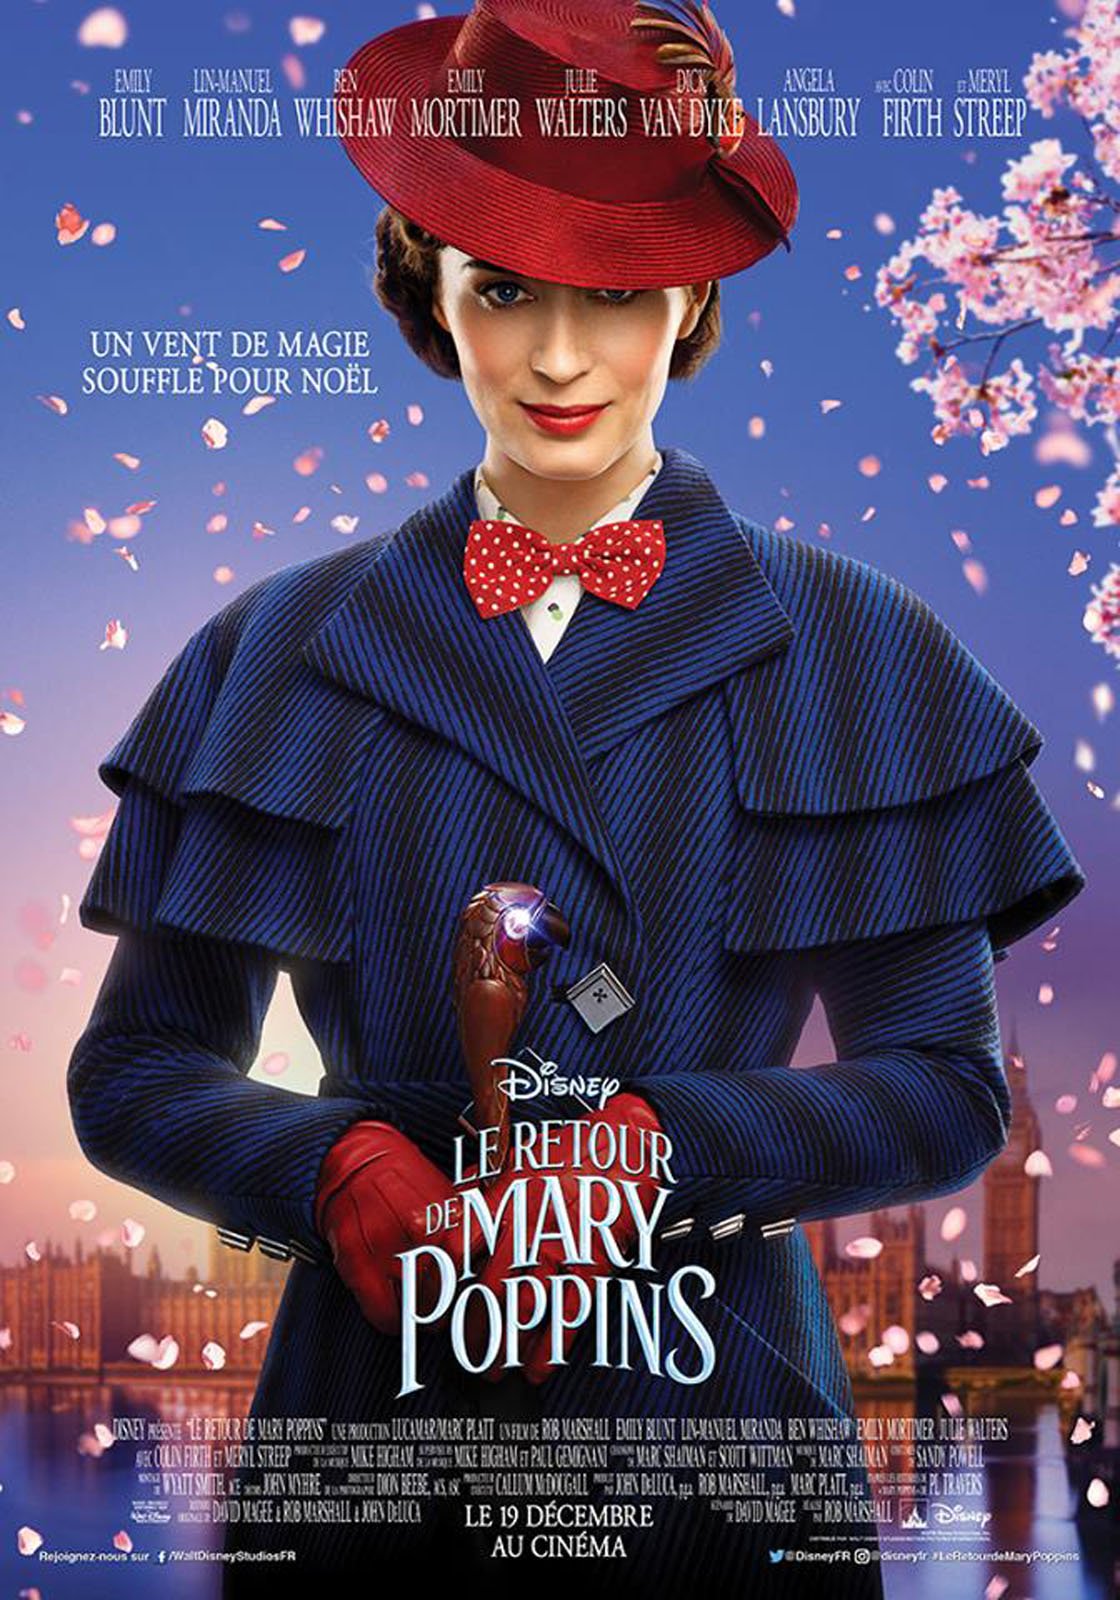 Extrait Du Film Le Retour De Mary Poppins Le Retour De Mary Poppins Extrait Vf Rien N Est Impossible Pas Meme L Impossible Allocine